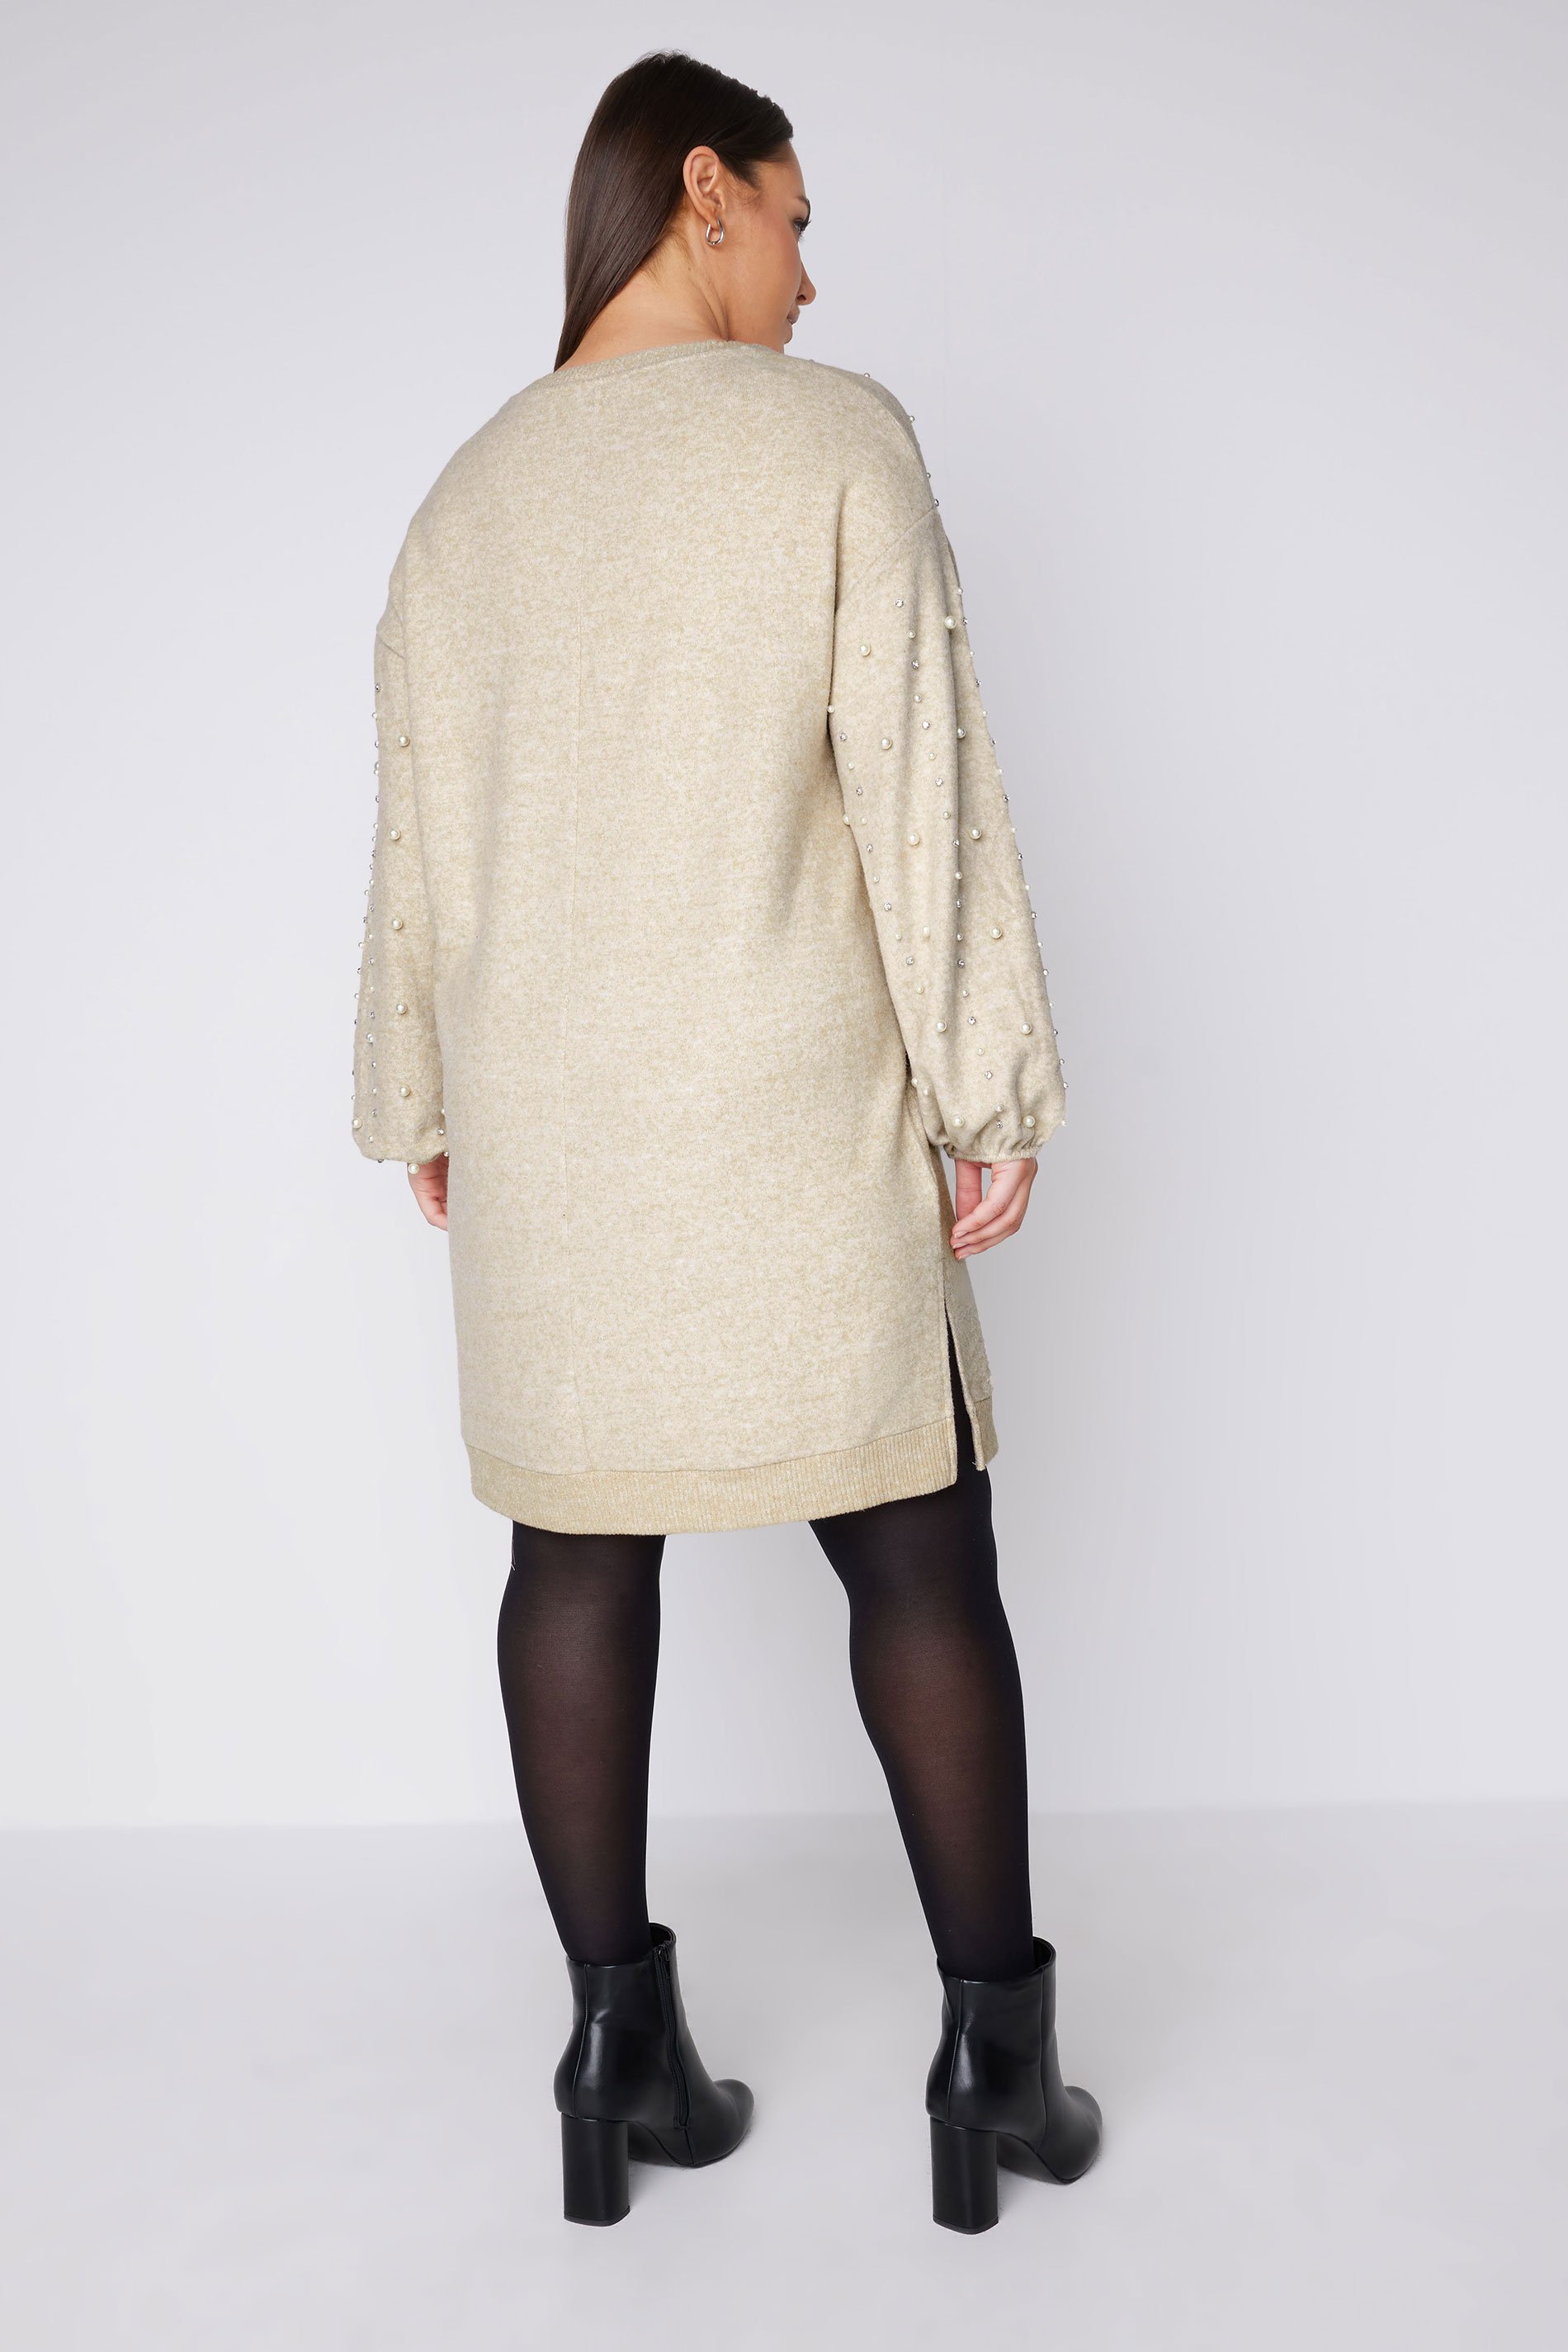 EVANS Plus Size Natural Brown Pearl Embellished Jumper Dress | Evans 3